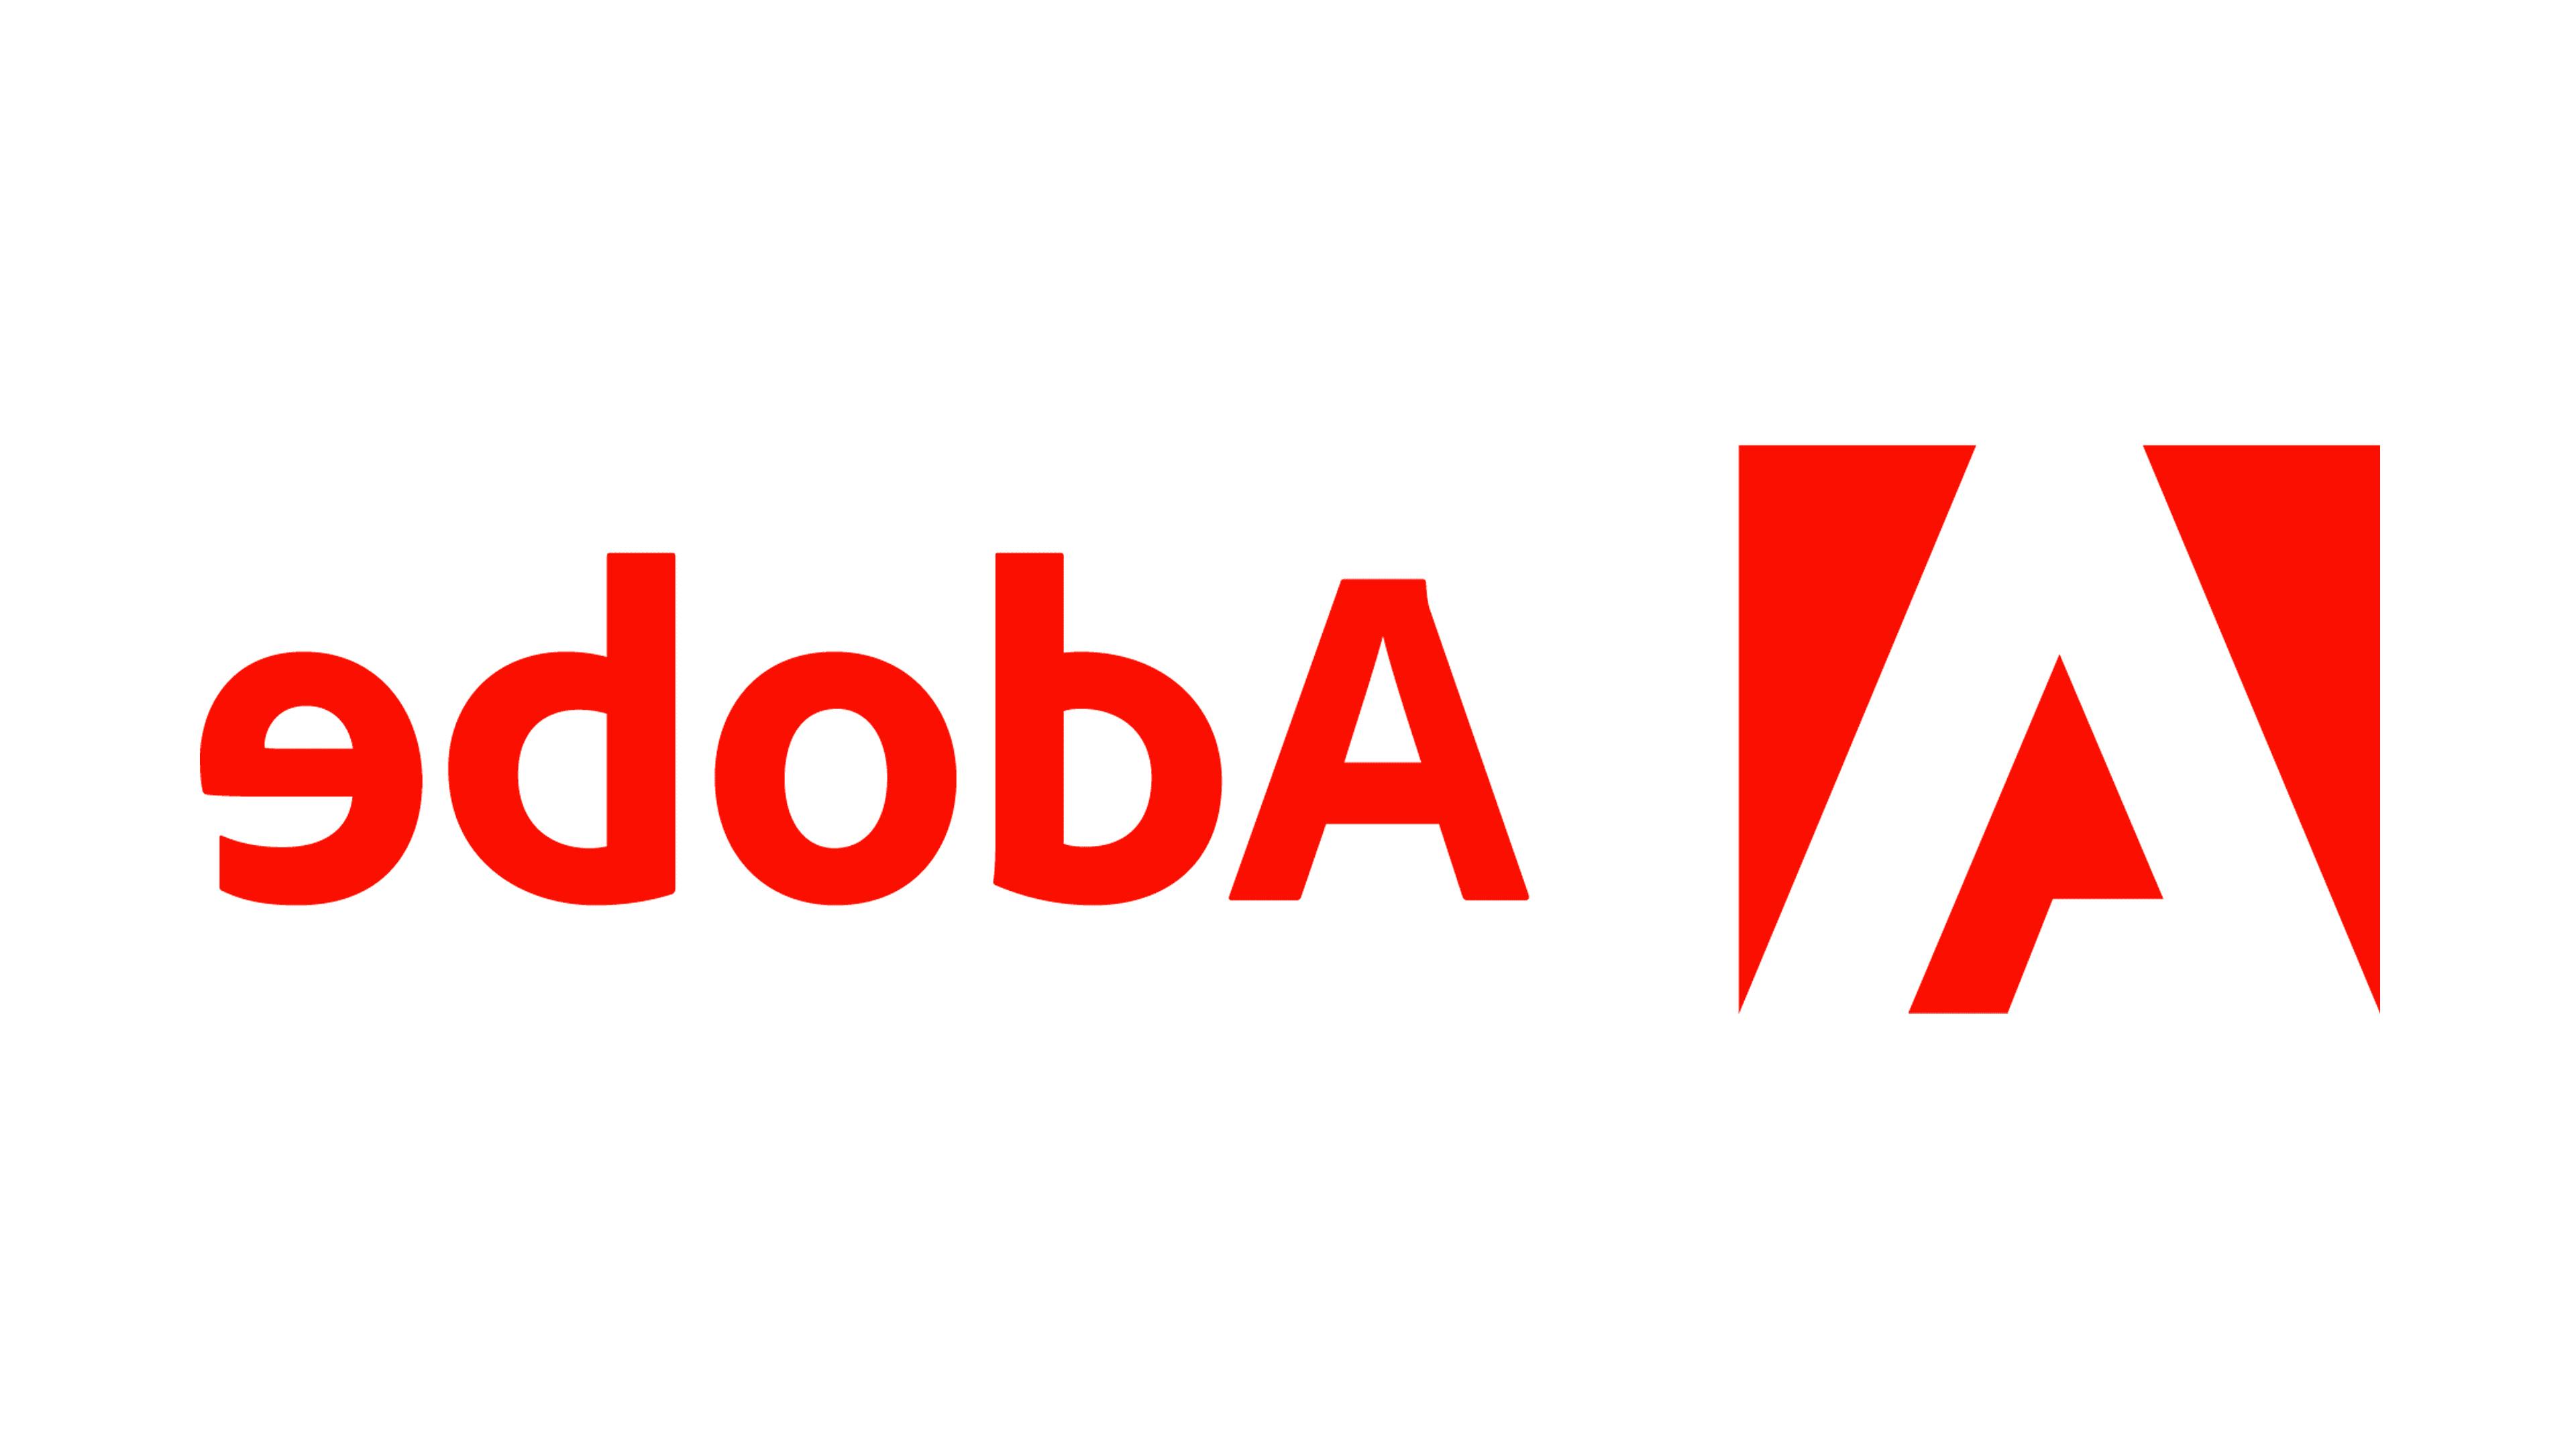 Adobe logo in red